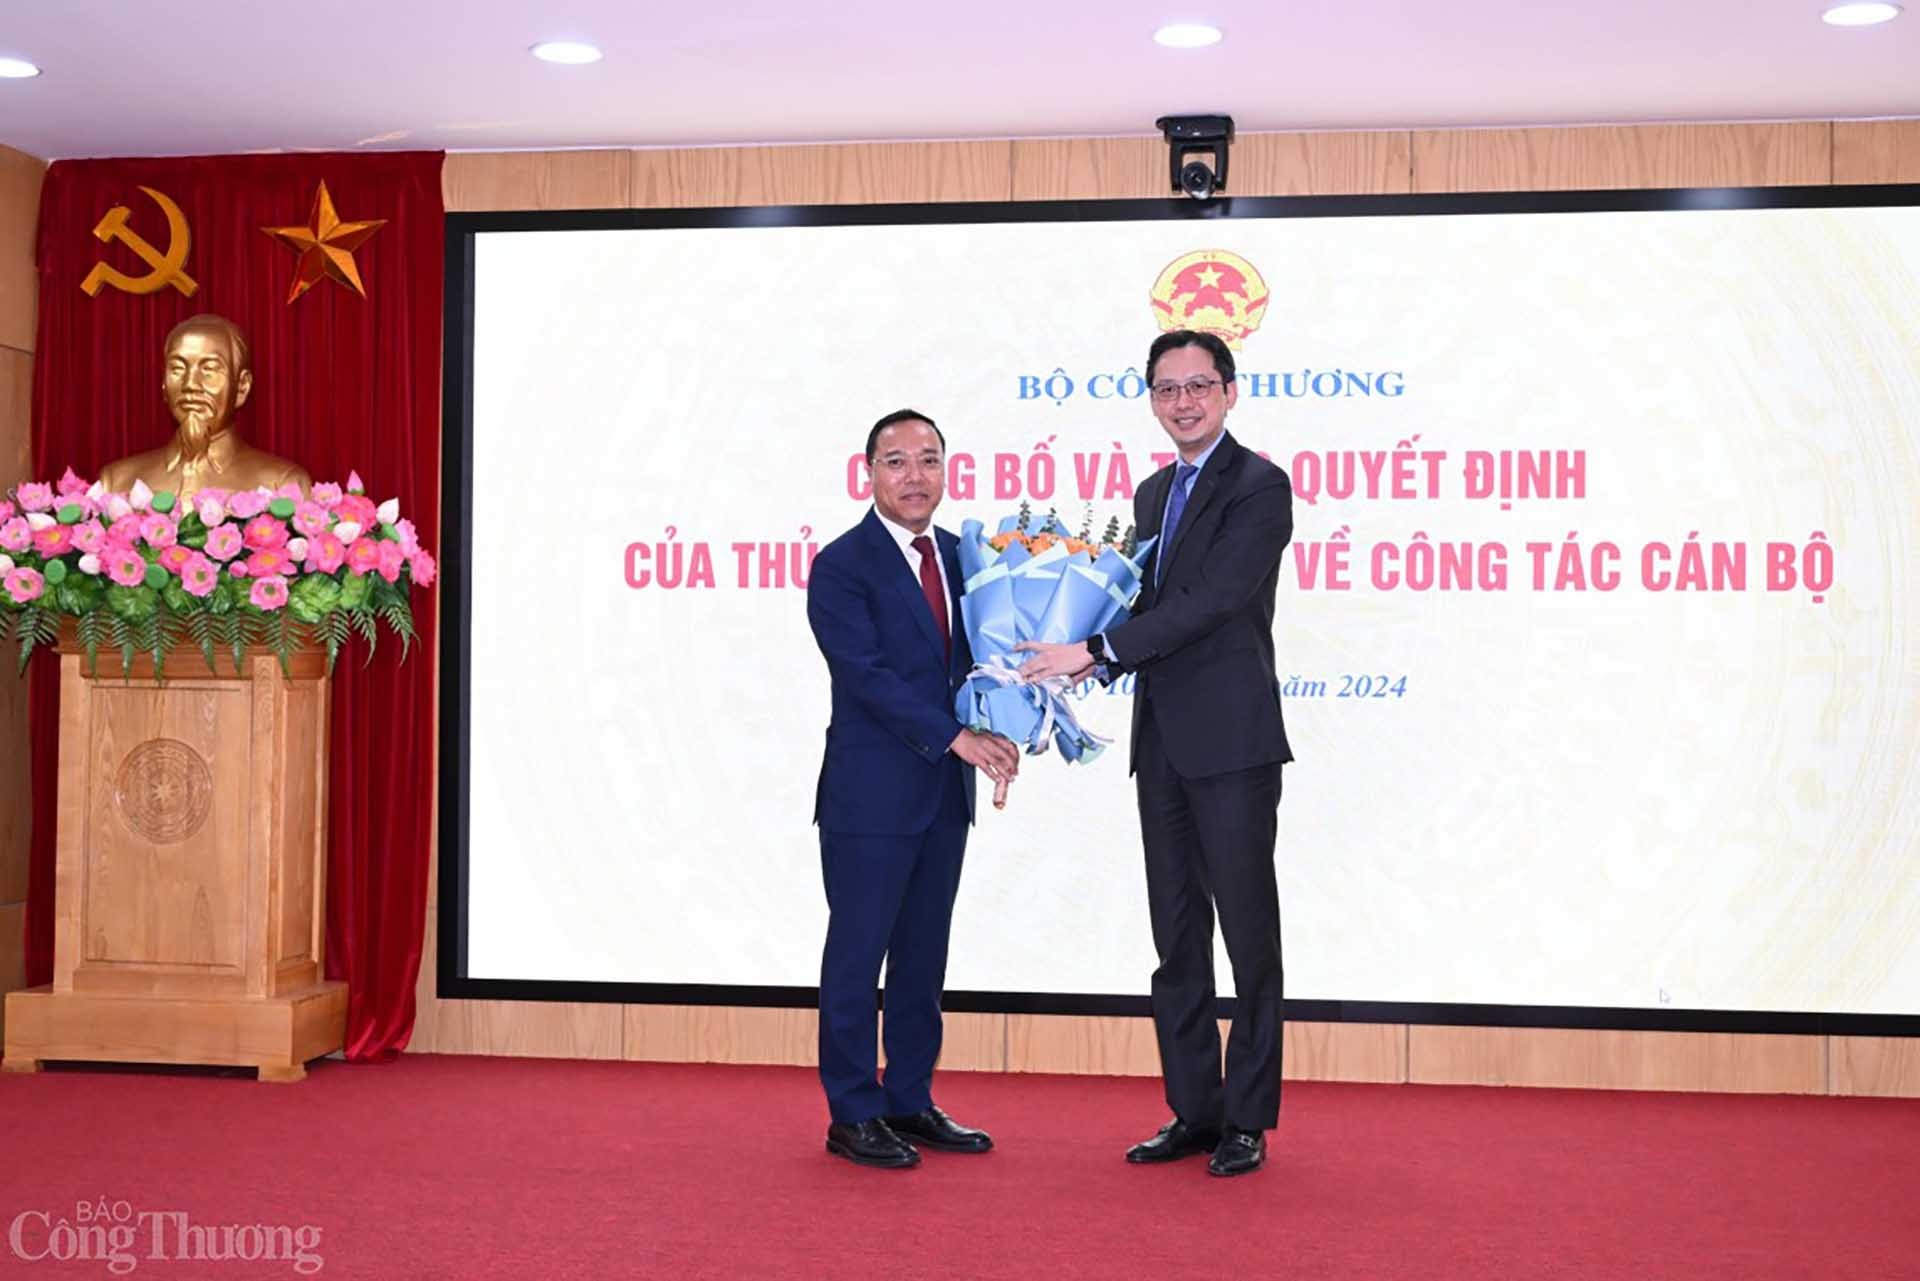 Trao quyết định bổ nhiệm ông Nguyễn Hoàng Long làm Thứ trưởng Bộ Công Thương